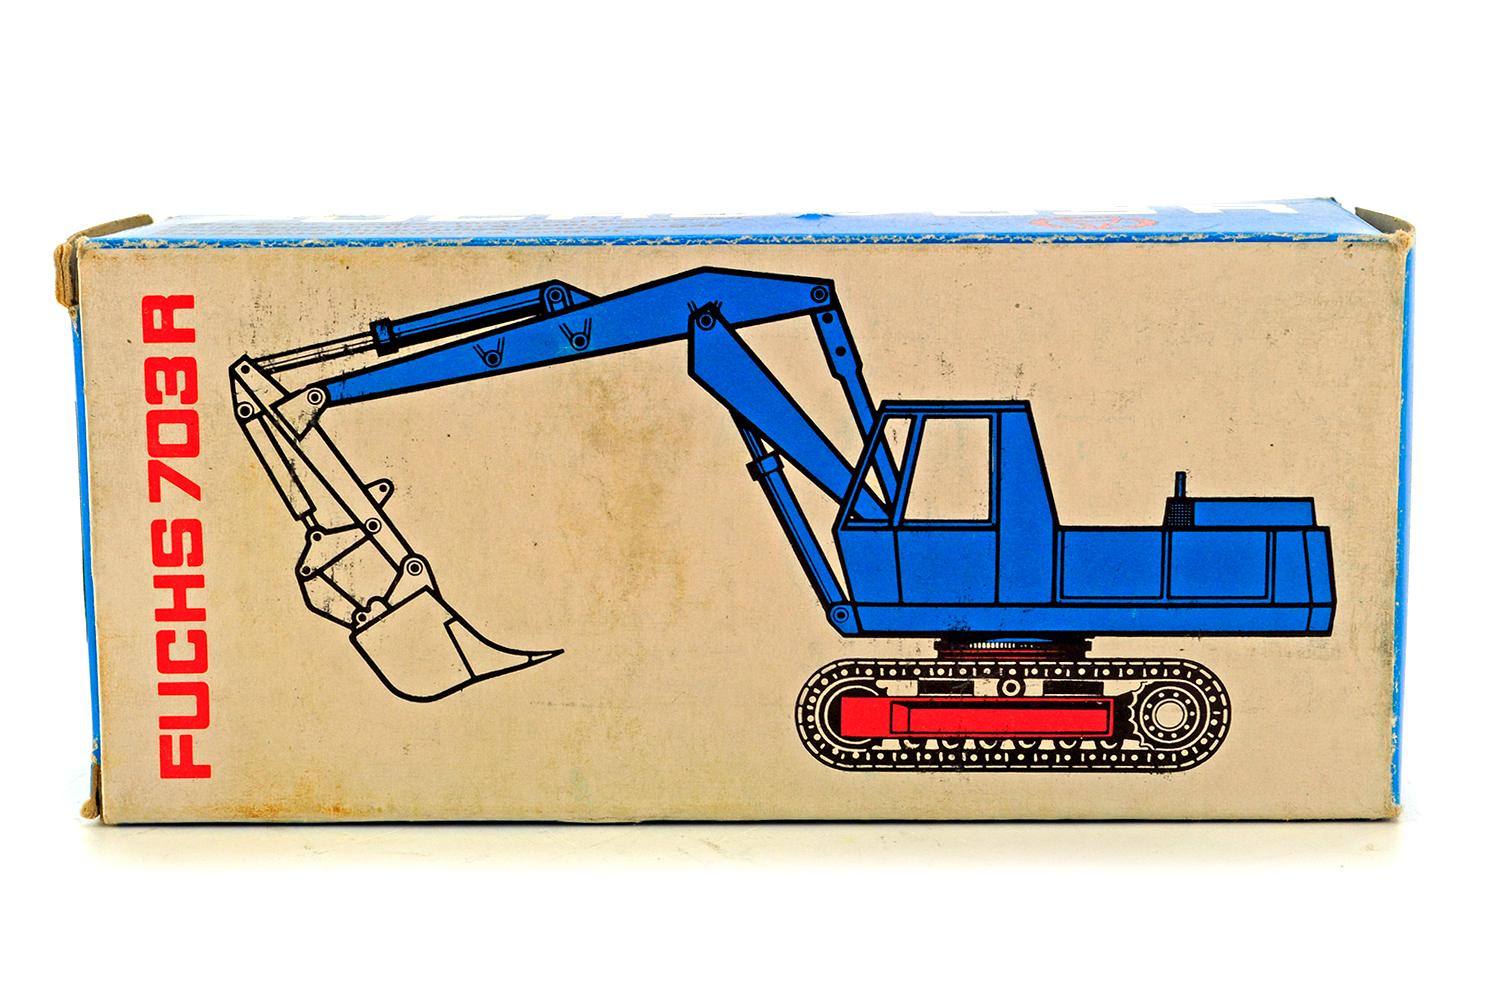 Fuchs 703R Hydraulic Crawler Mounted Excavator - Blue